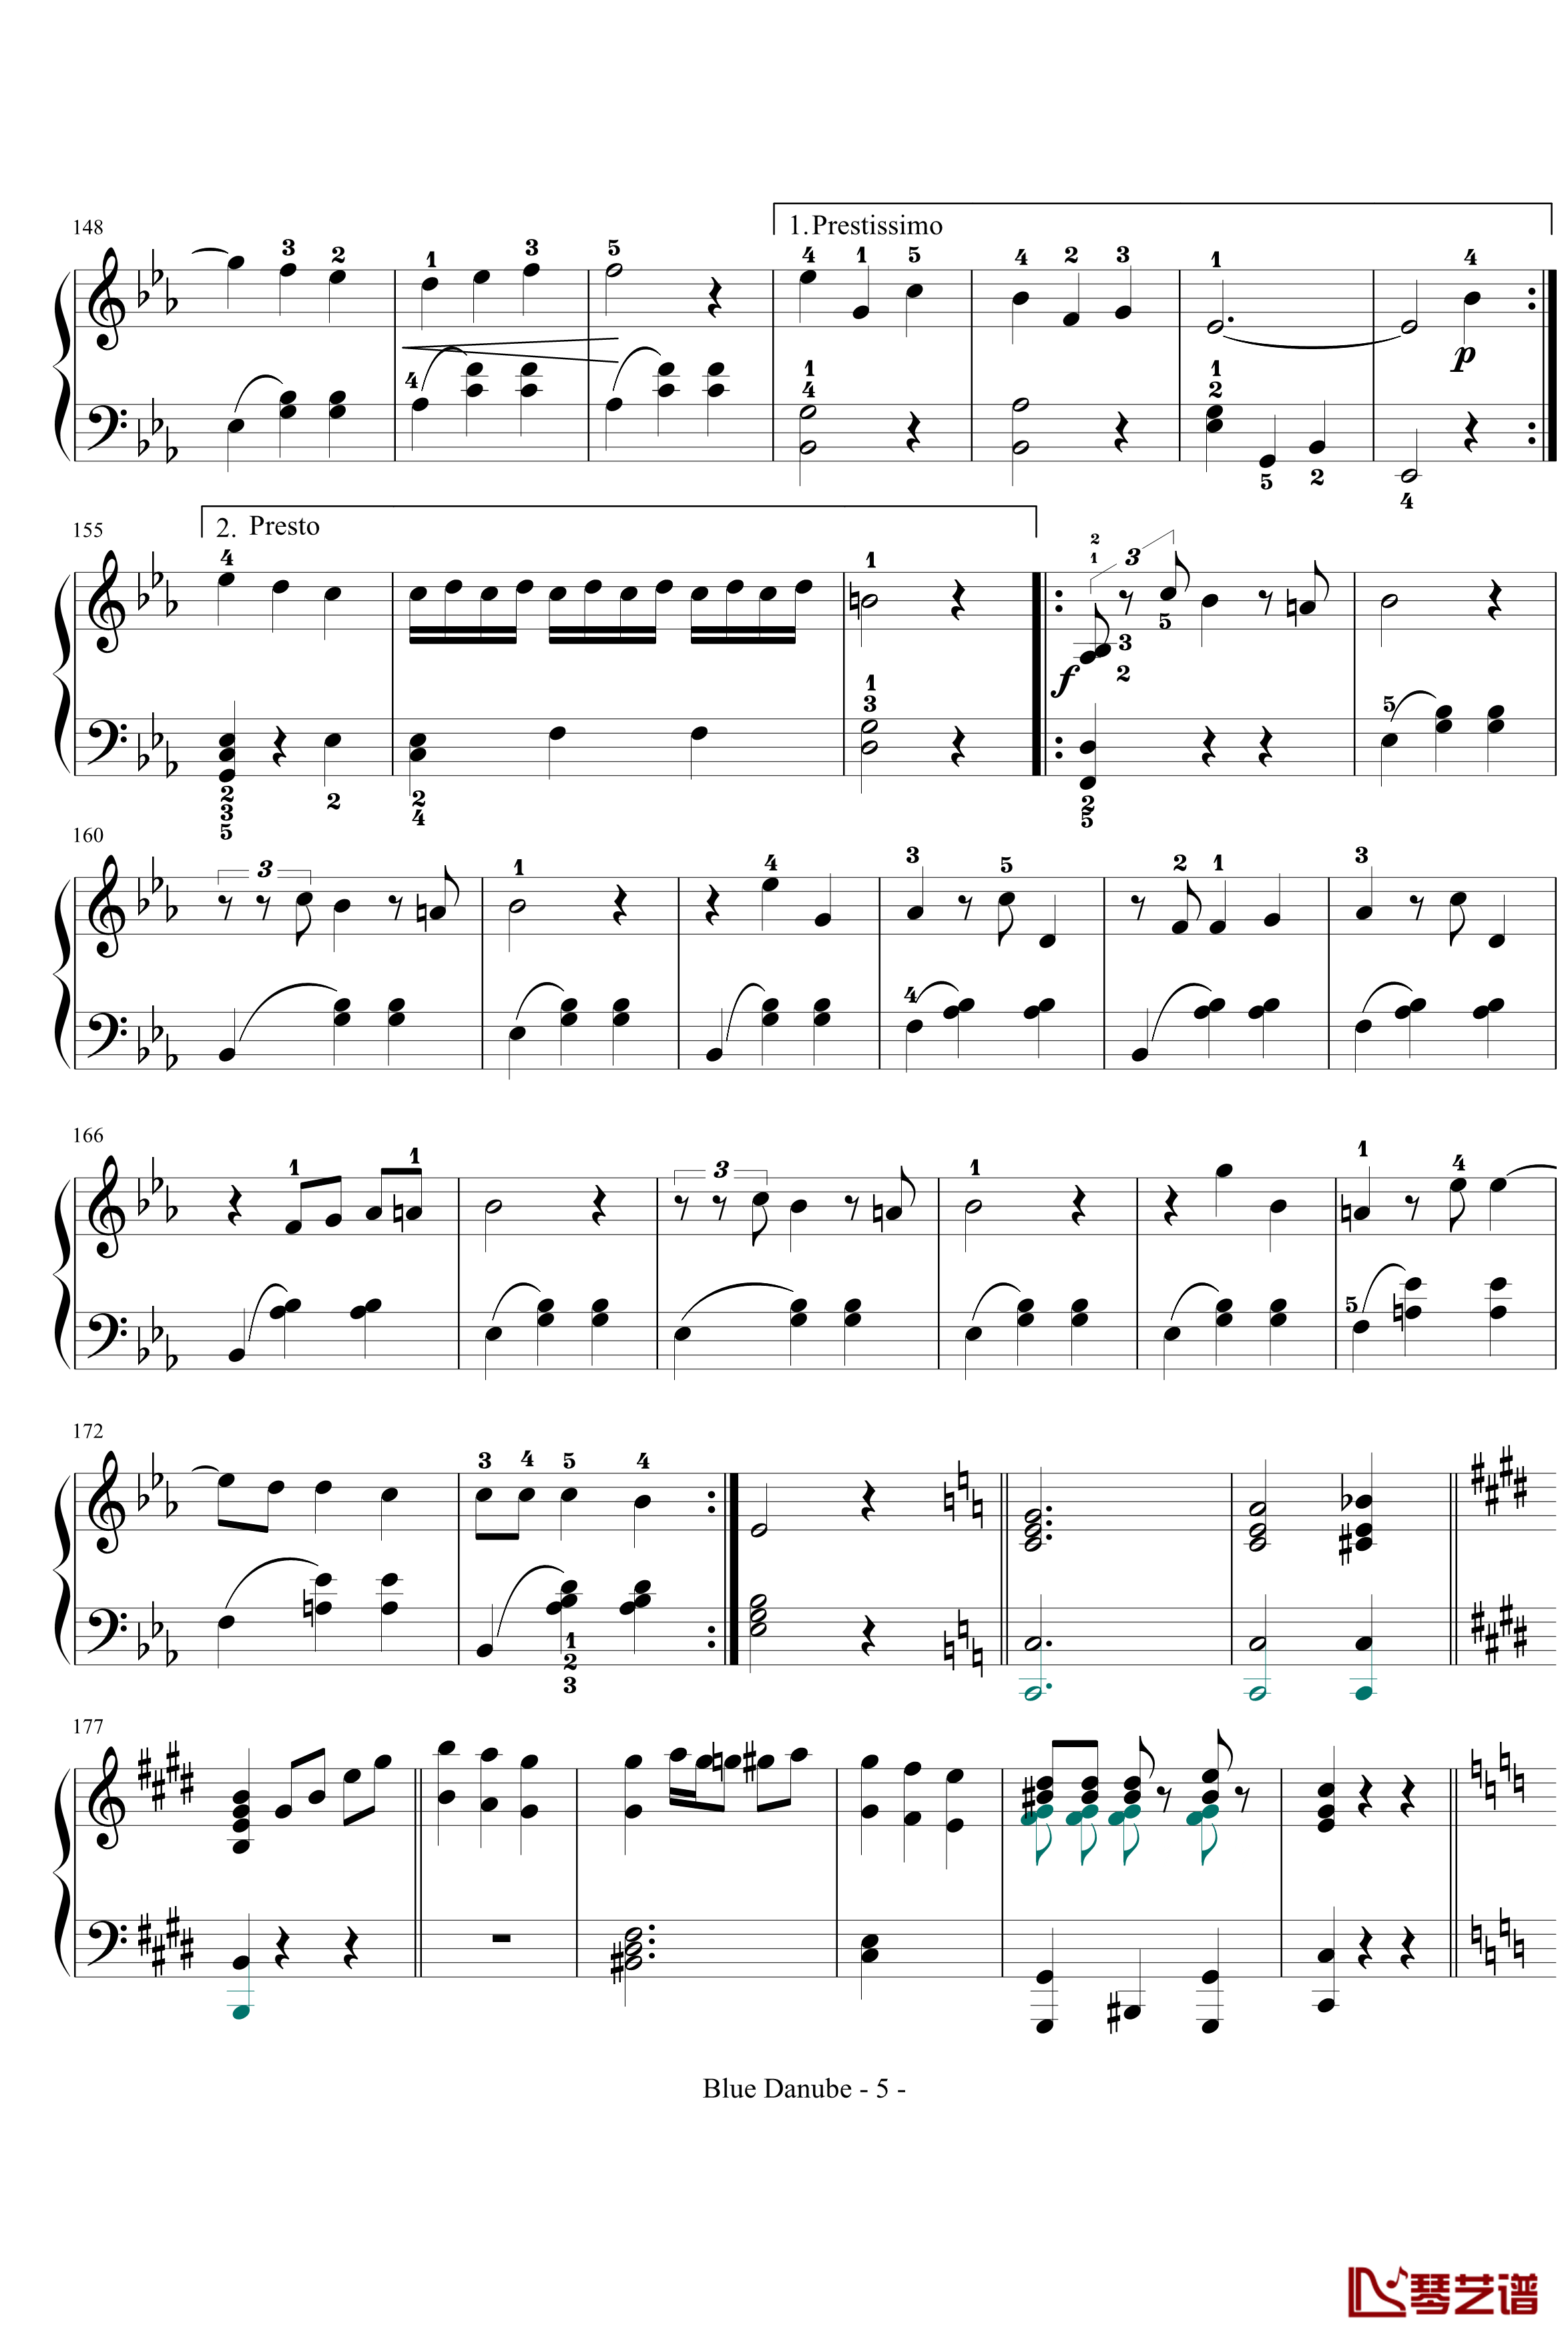 蓝色多瑙河钢琴谱-完整-带指法简化-约翰·斯特劳斯5